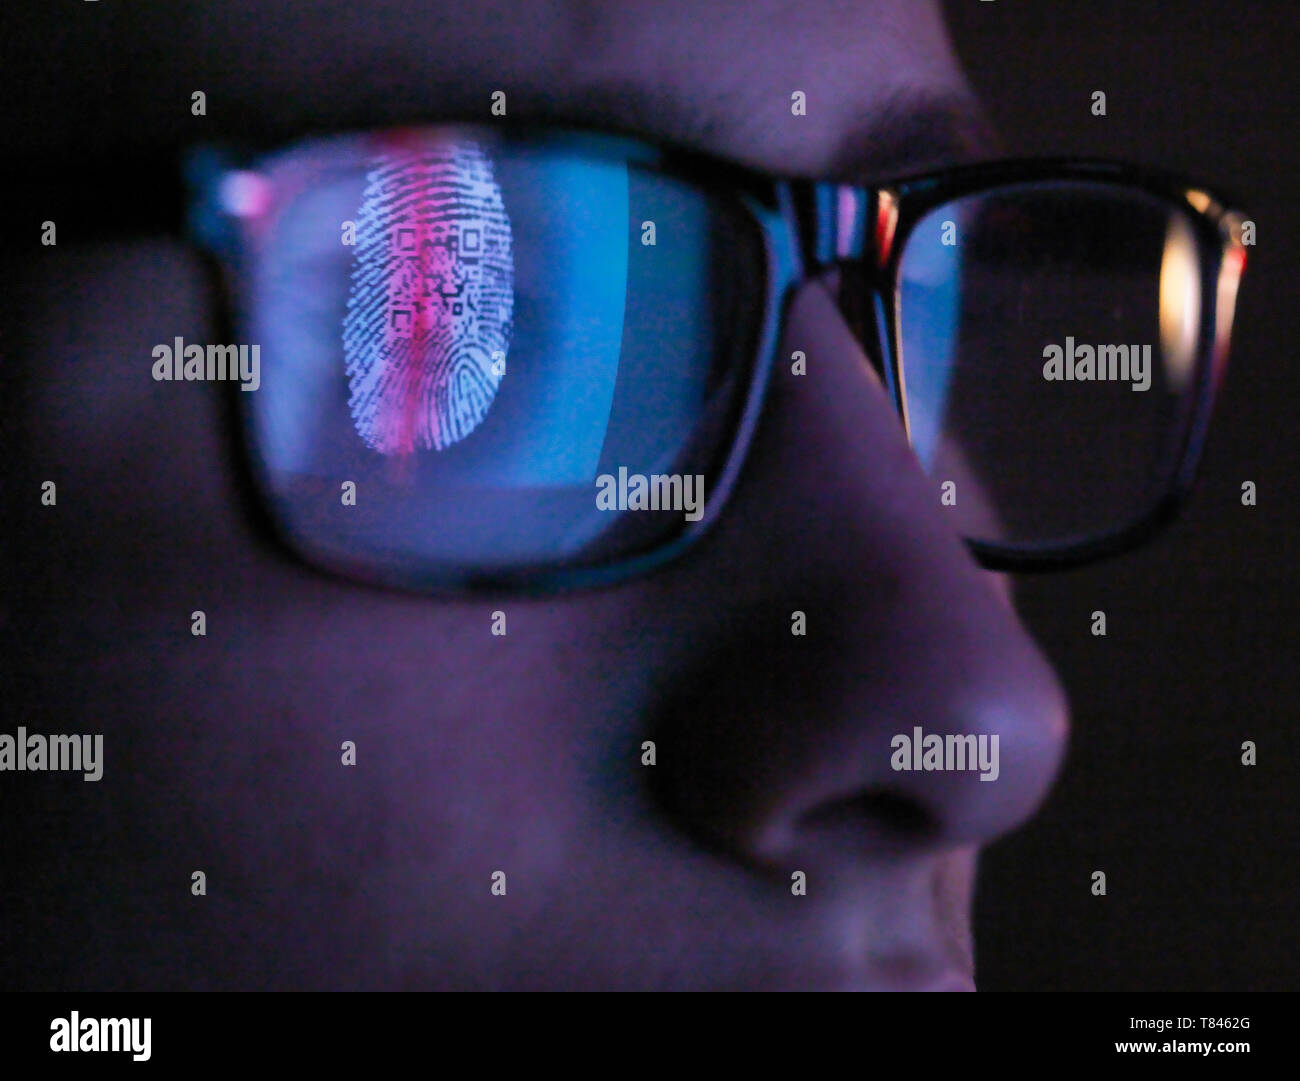 La cybersécurité, reflet dans les lunettes d'accéder à l'information faisant l'objet d'une lecture sur écran d'ordinateur, Close up of face Banque D'Images